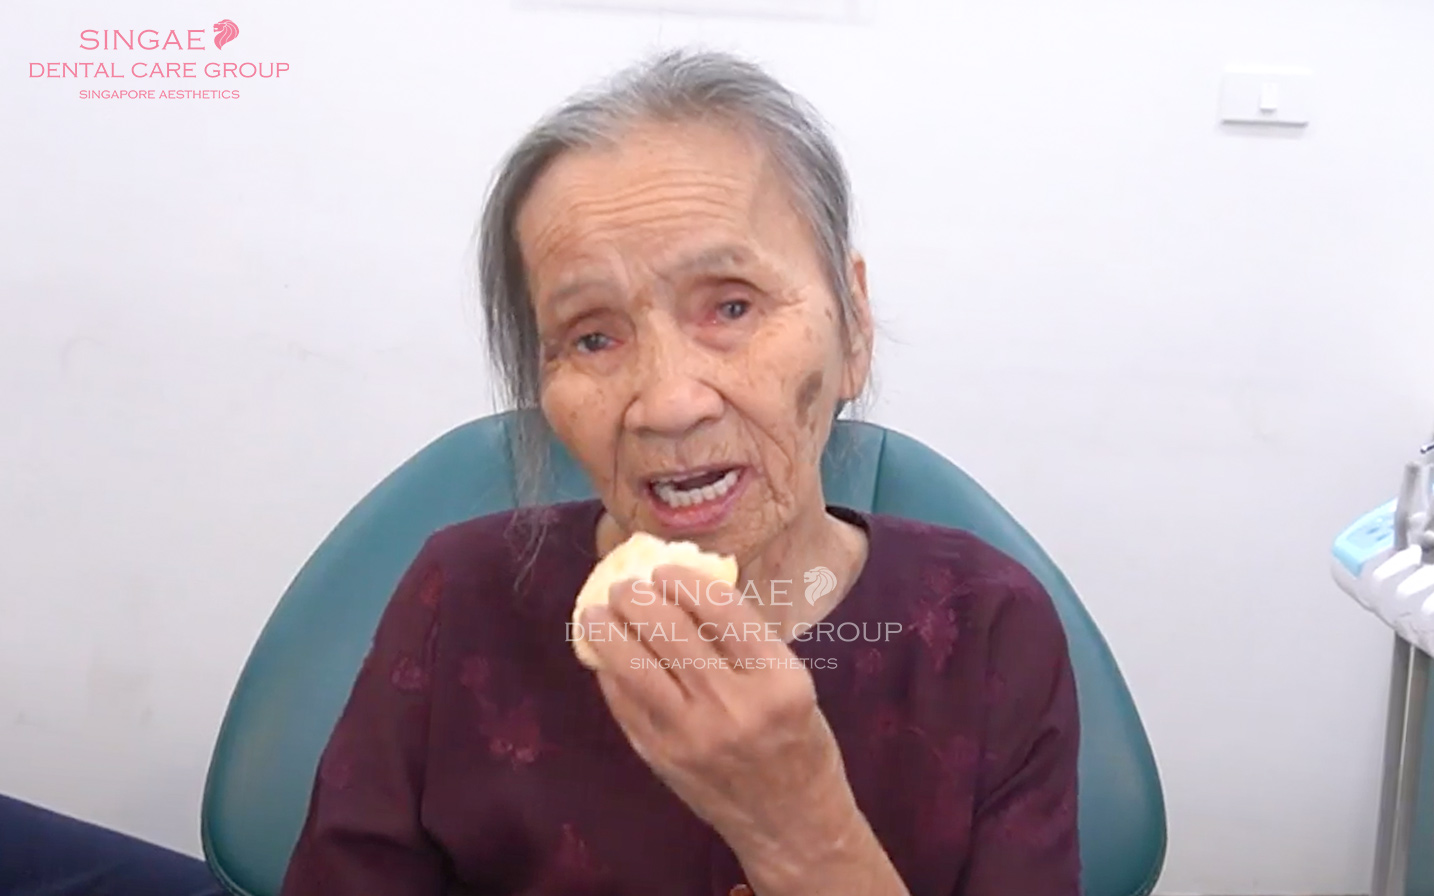 Sau khi trồng răng Implant bà đã ăn được bánh gạo